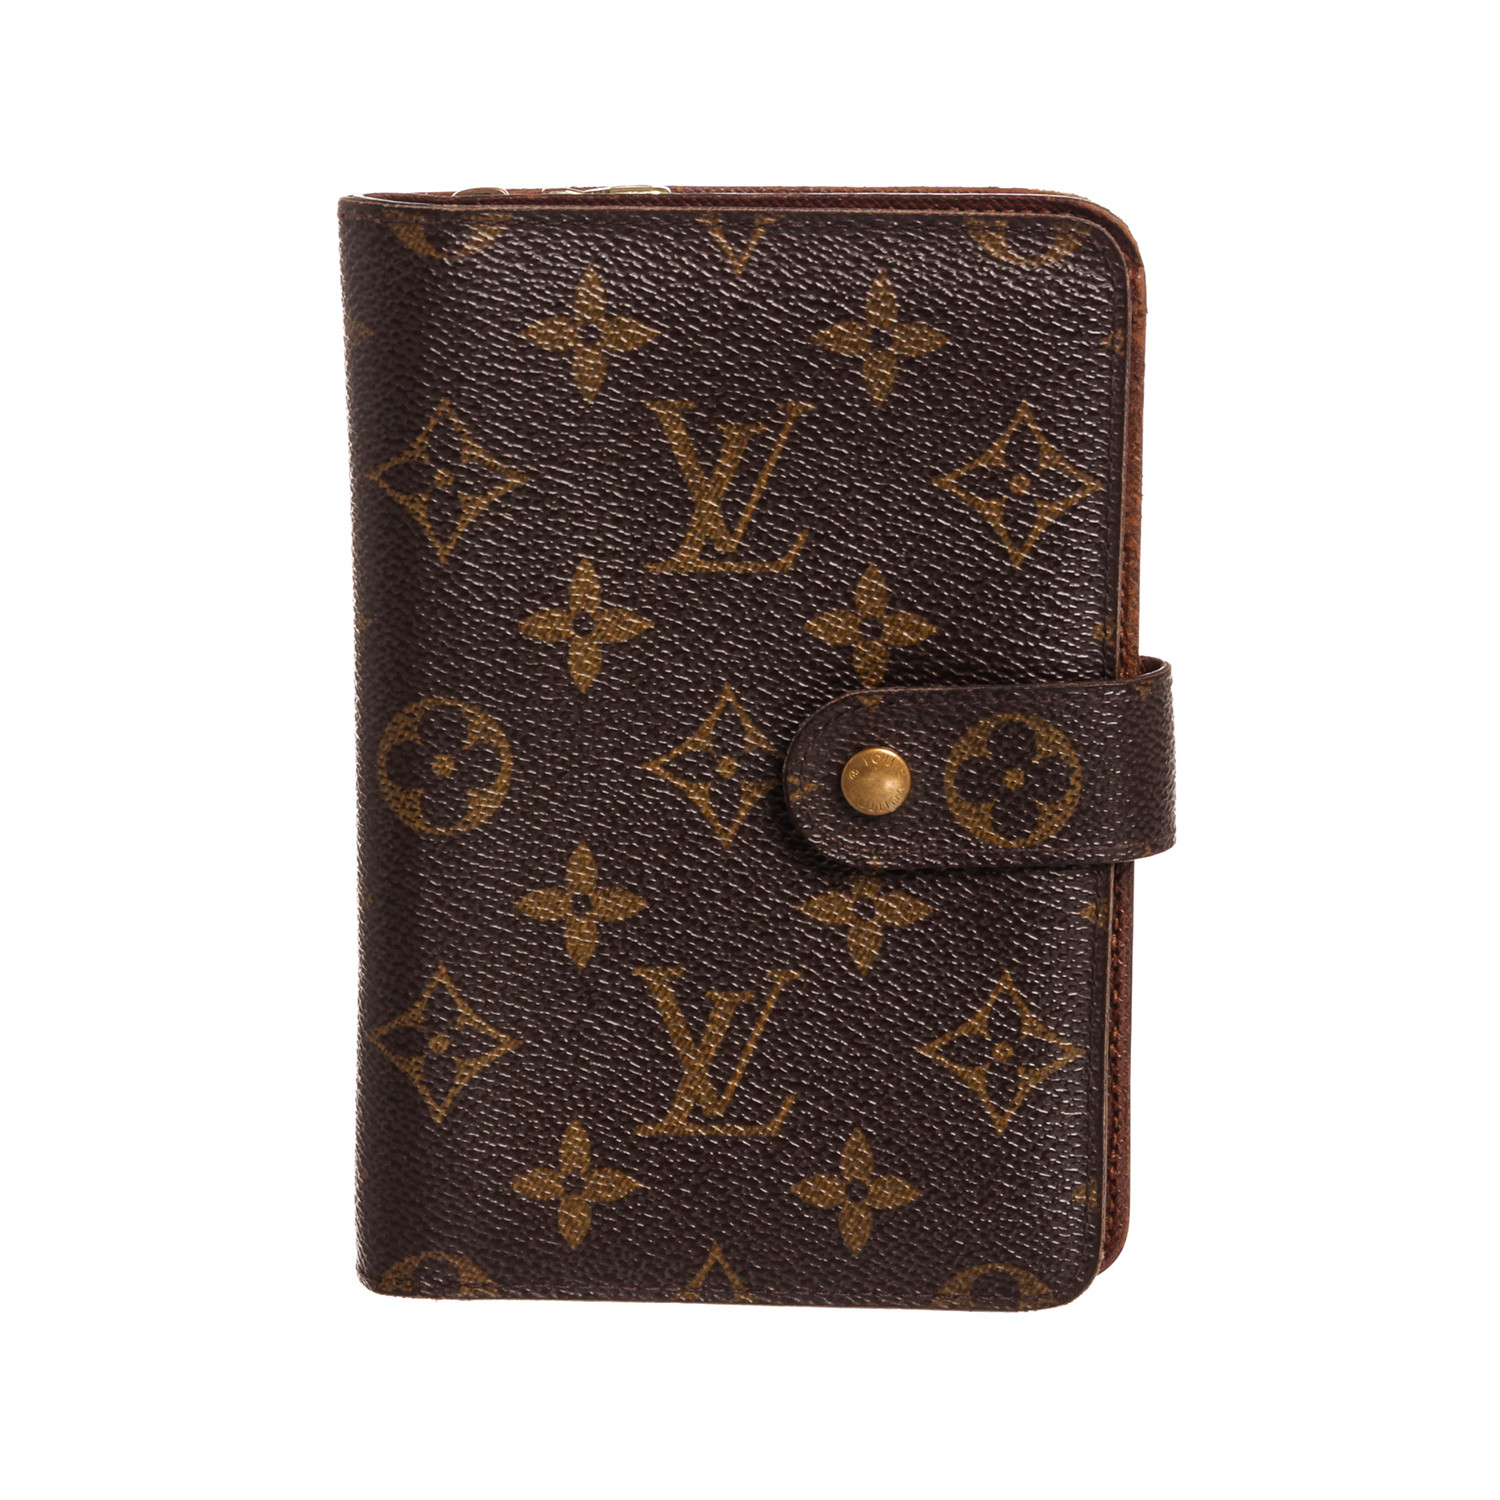 Louis Vuitton Zipped Passport Holder Wallet - A World Of Goods For